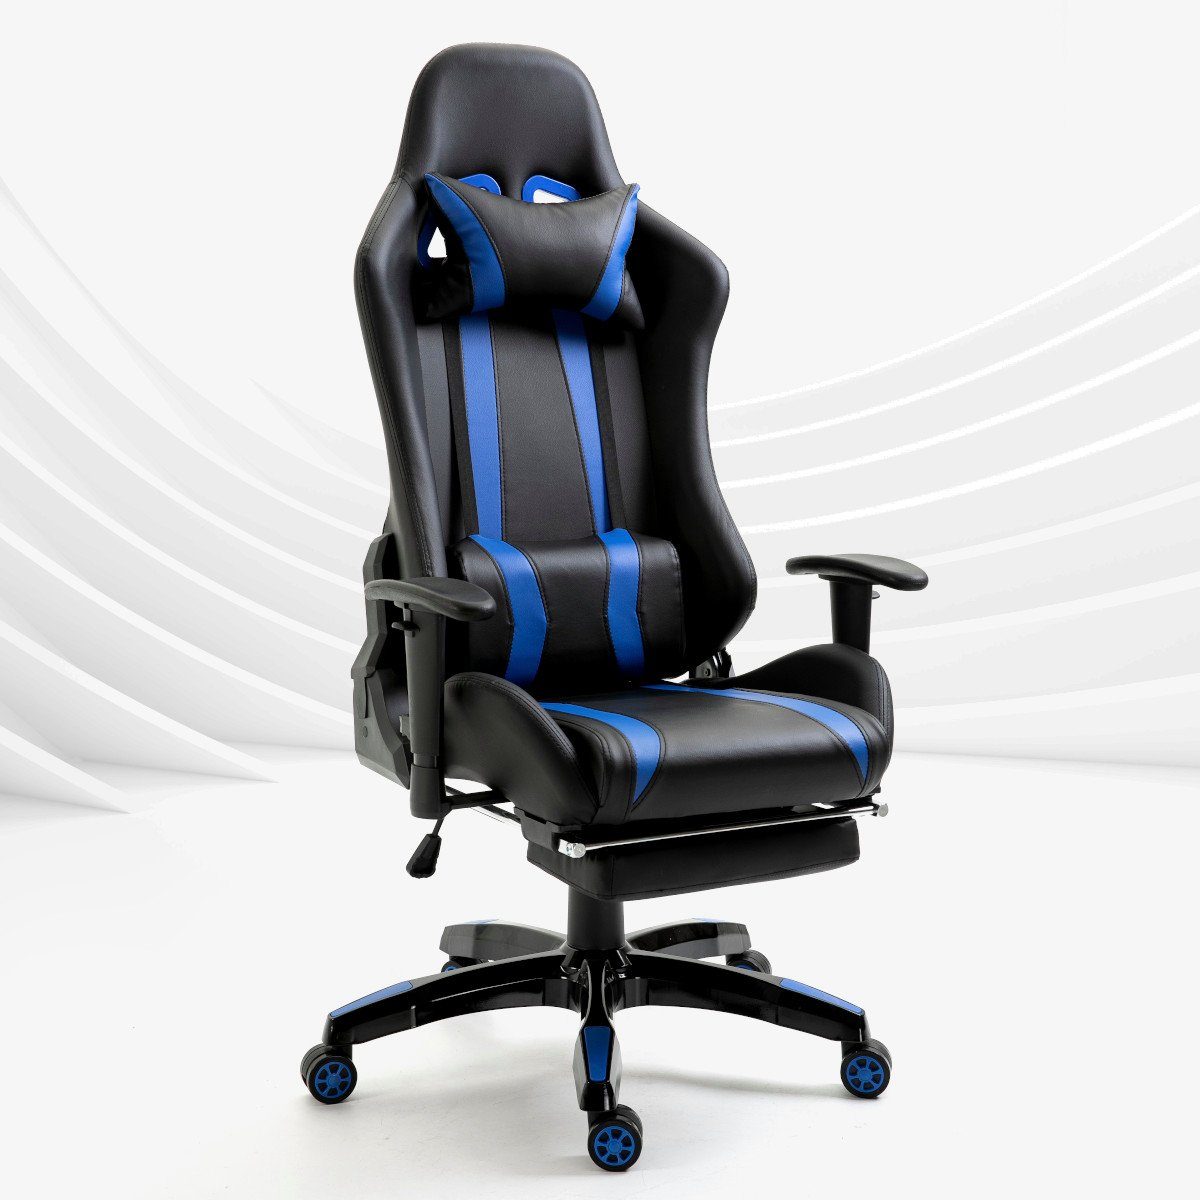 Fußablage, mit blauen mit Chair SVITA verstellbare ausziehbare Gaming St), & (1 GAMYX Streifen Streifen Schwarz blauen | Armlehnen, Schwarz Nackenkissen Lenden-